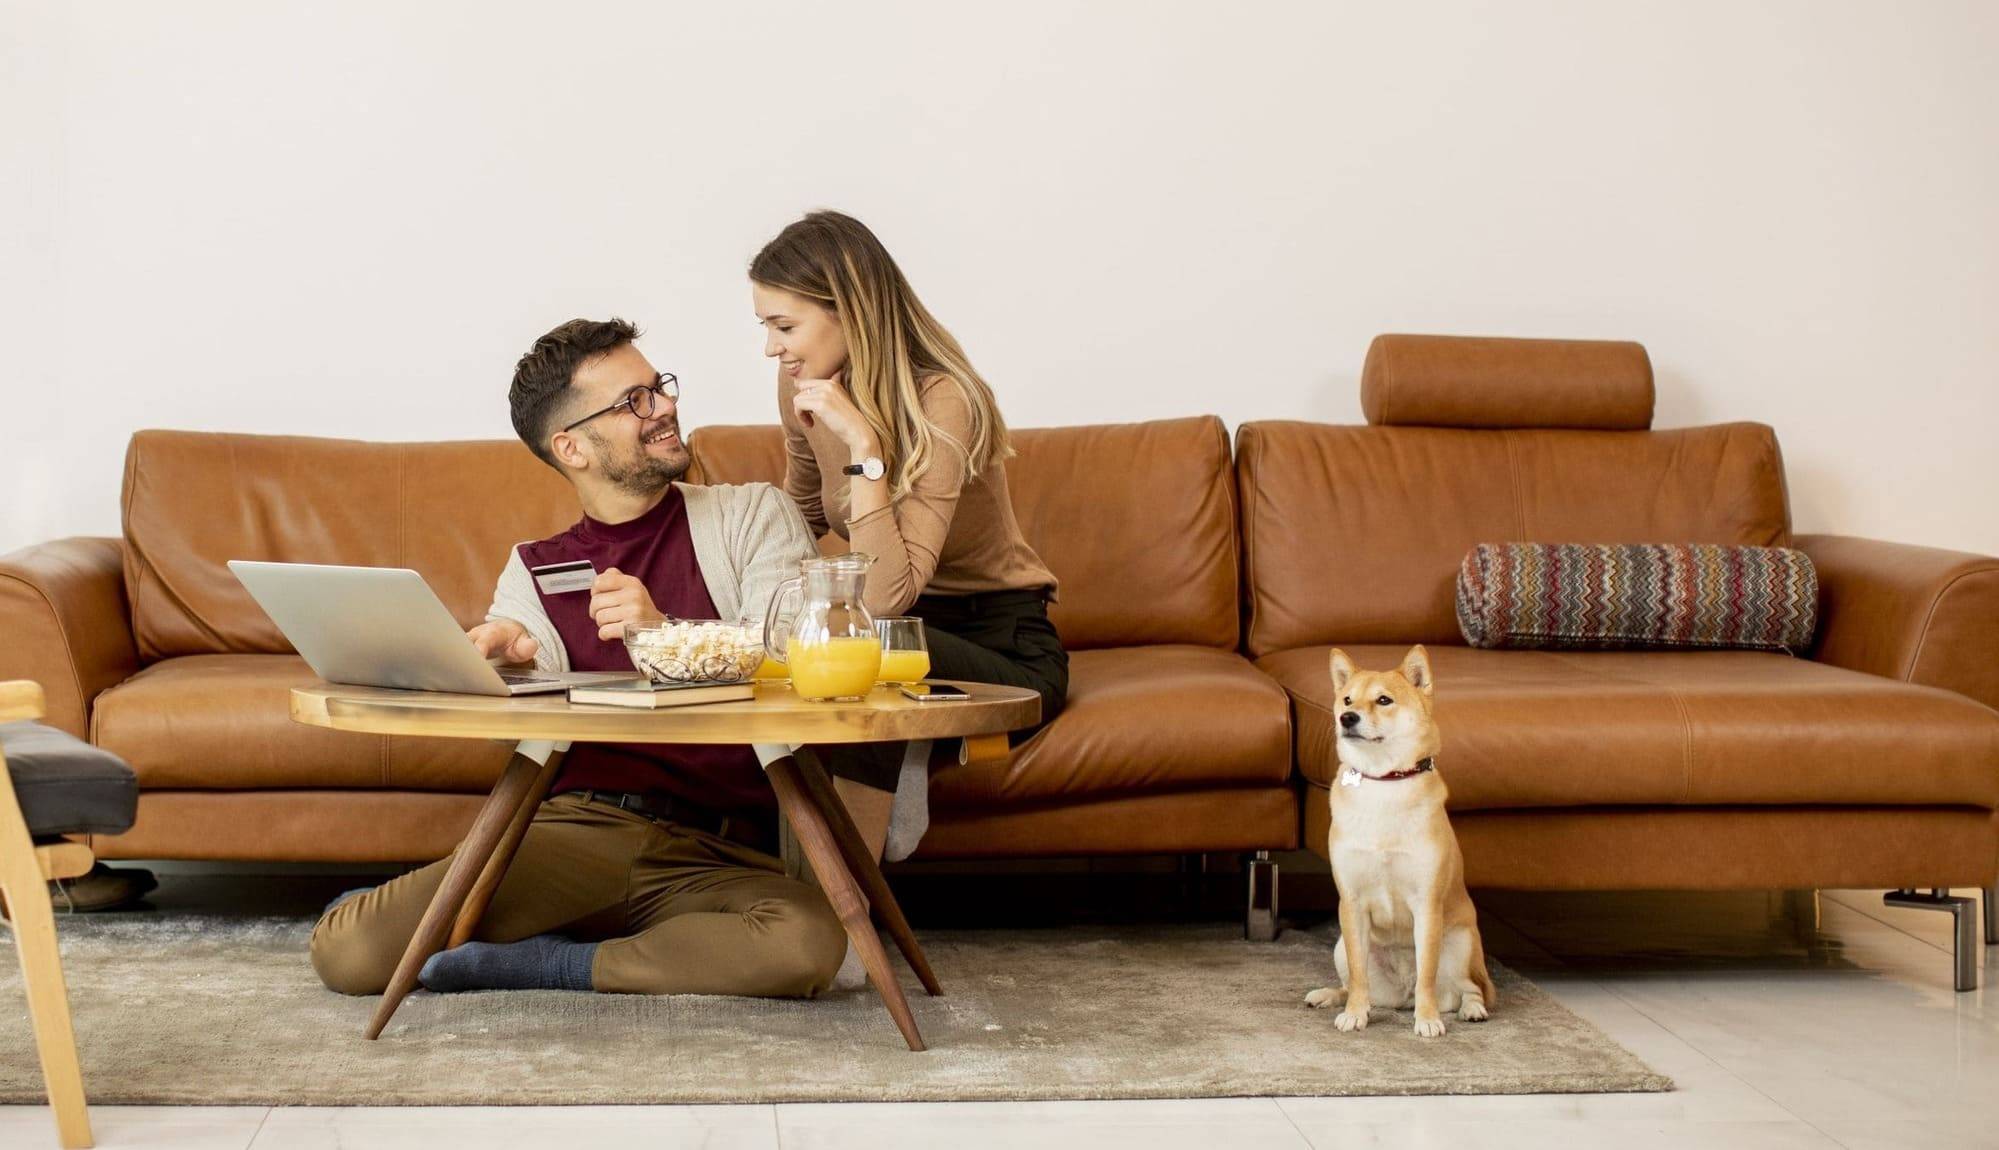 casal feliz na sala de estar, com seu cachorro. Um notebook sobre a mesa, pote com pipocas, suco de laranja.